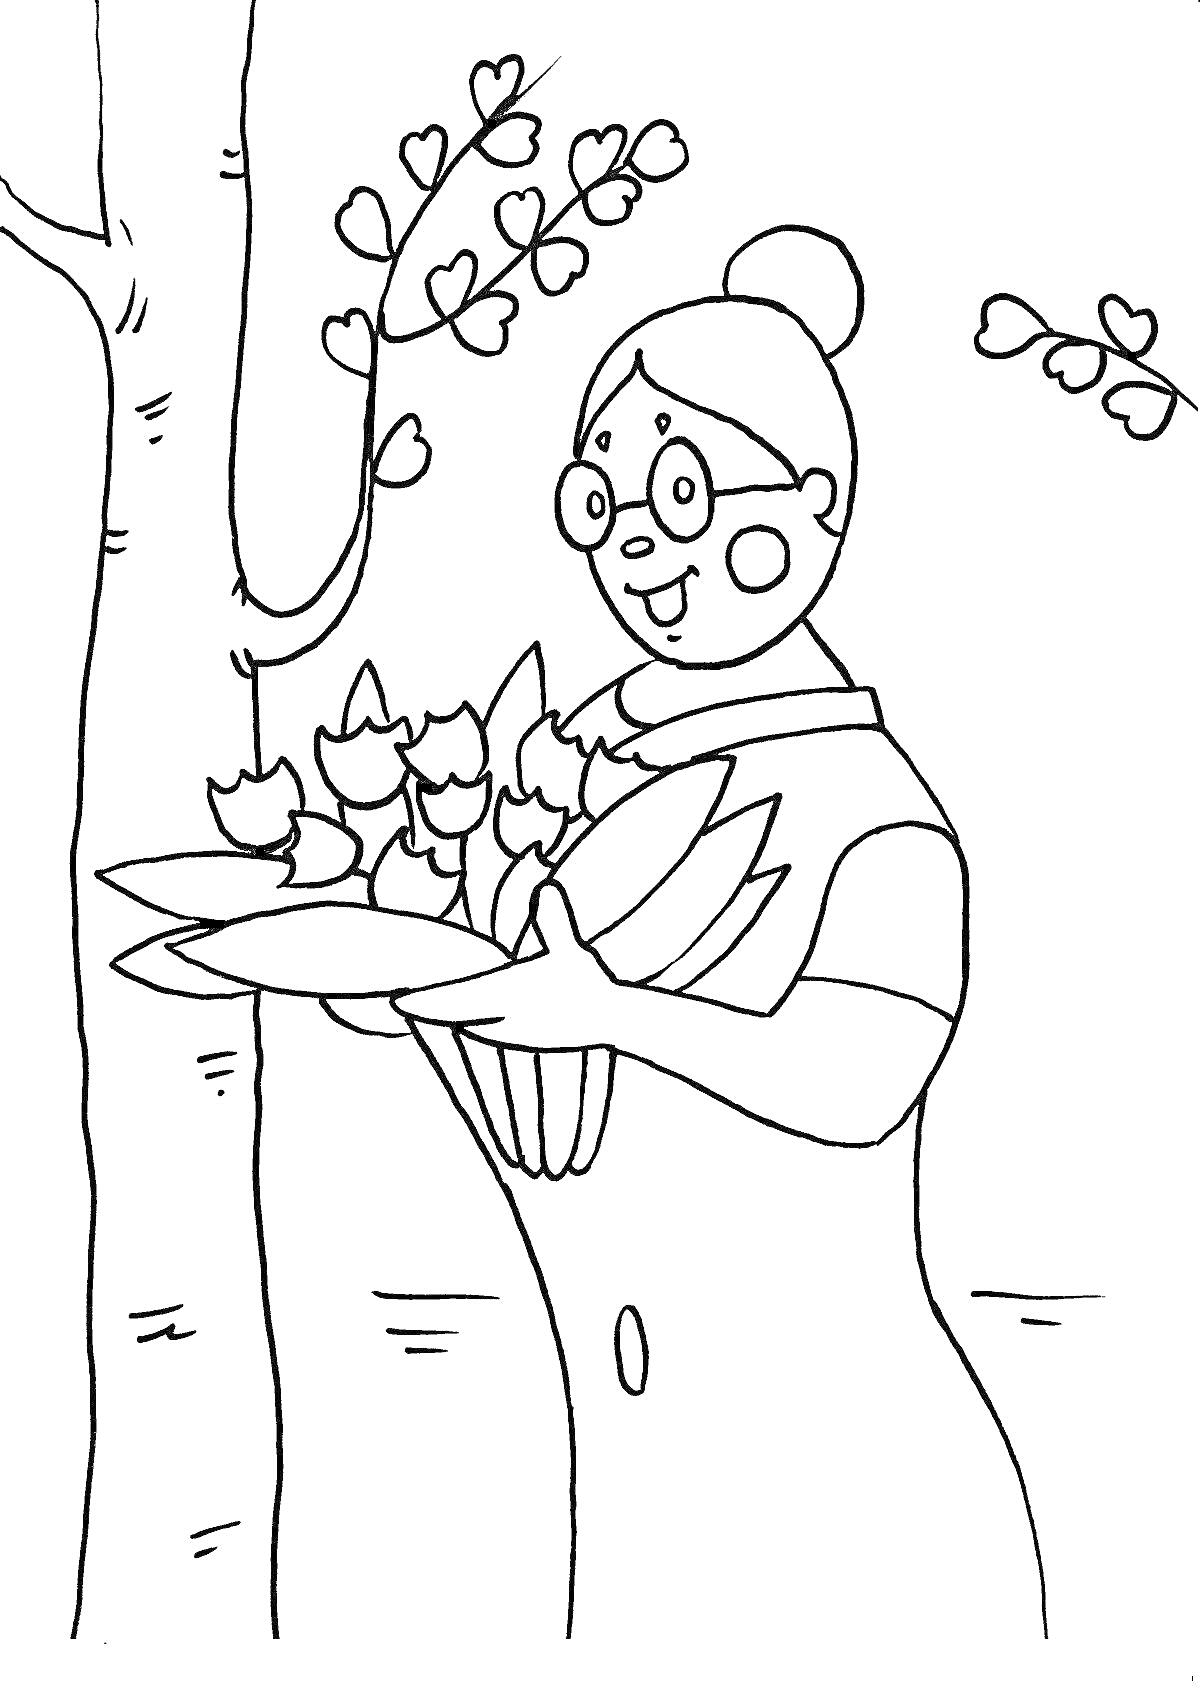 женщина в очках, с пучком на голове, держащая букет цветов, на фоне дерево с ветвями и листьями